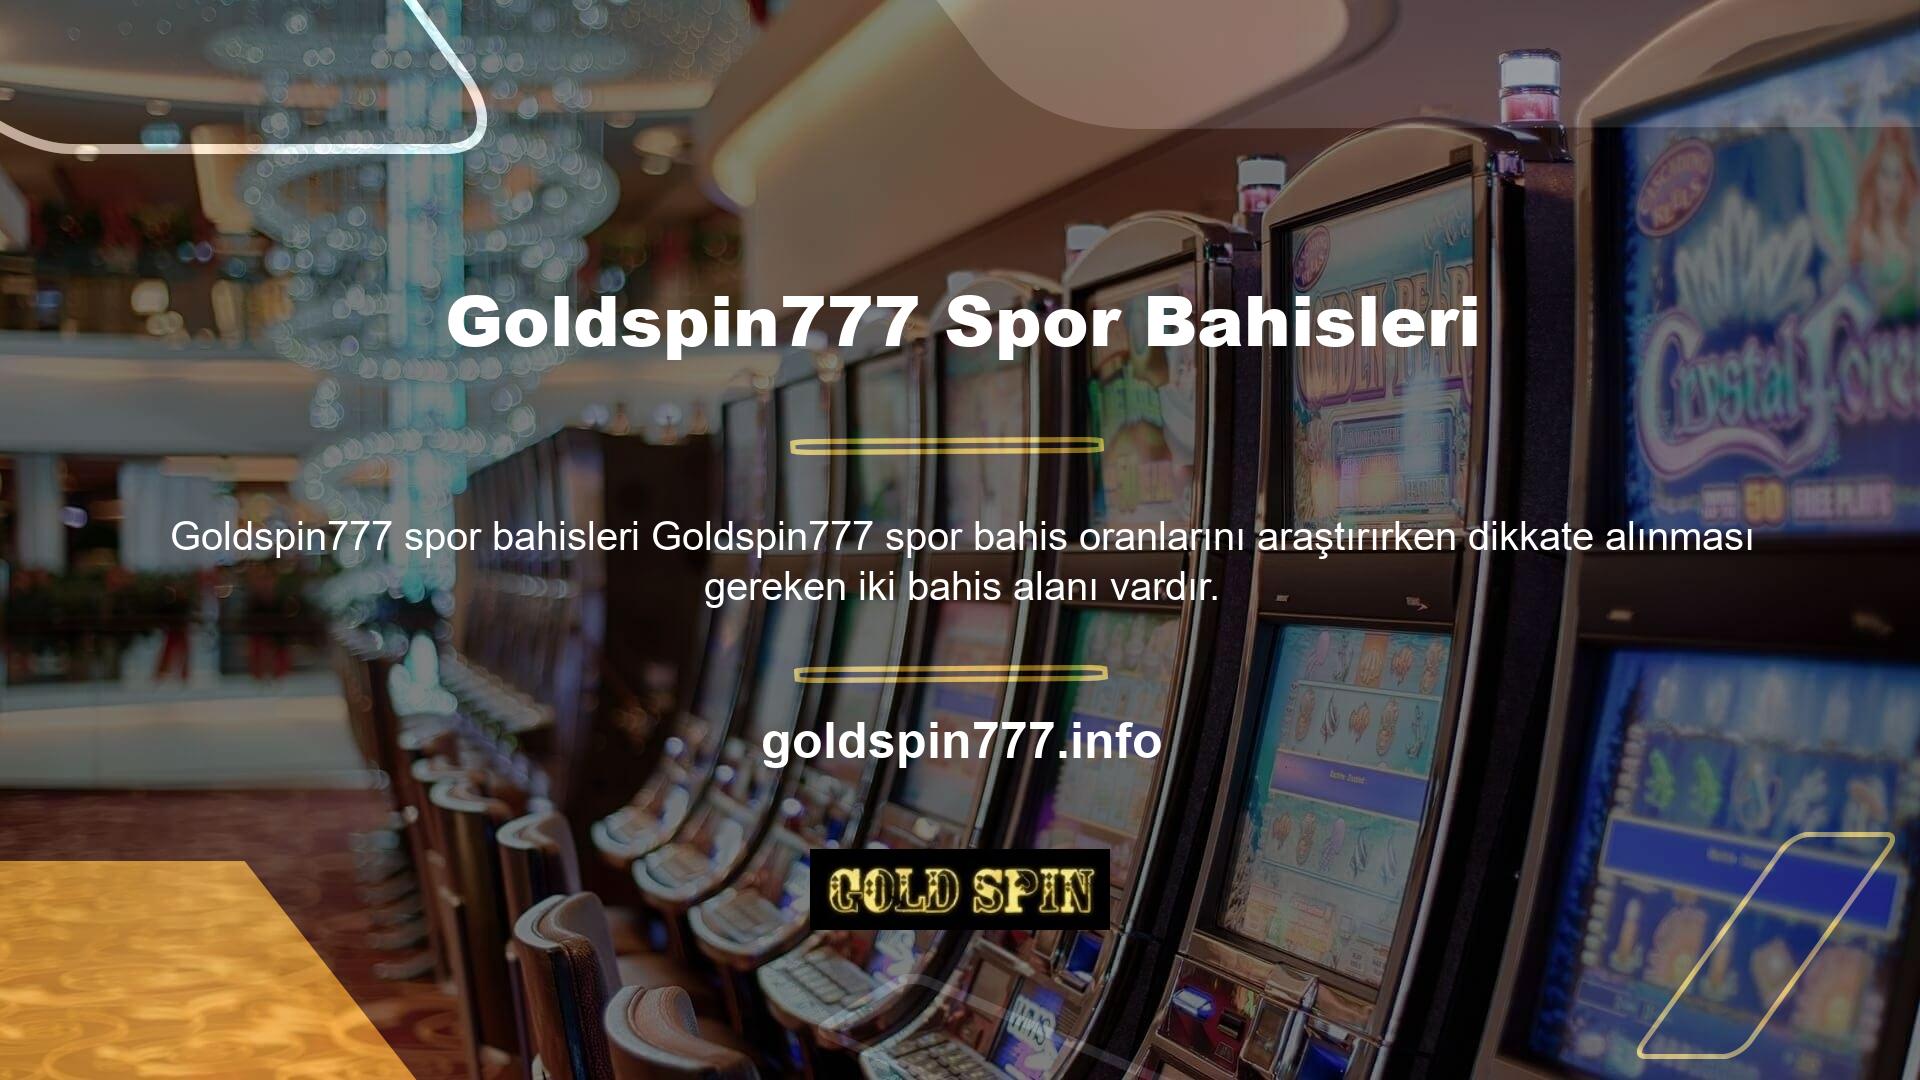 Goldspin777 spor bahis oranları araştırılırken kullanıcıların dikkate alması gereken iki bahis dalı bulunmaktadır